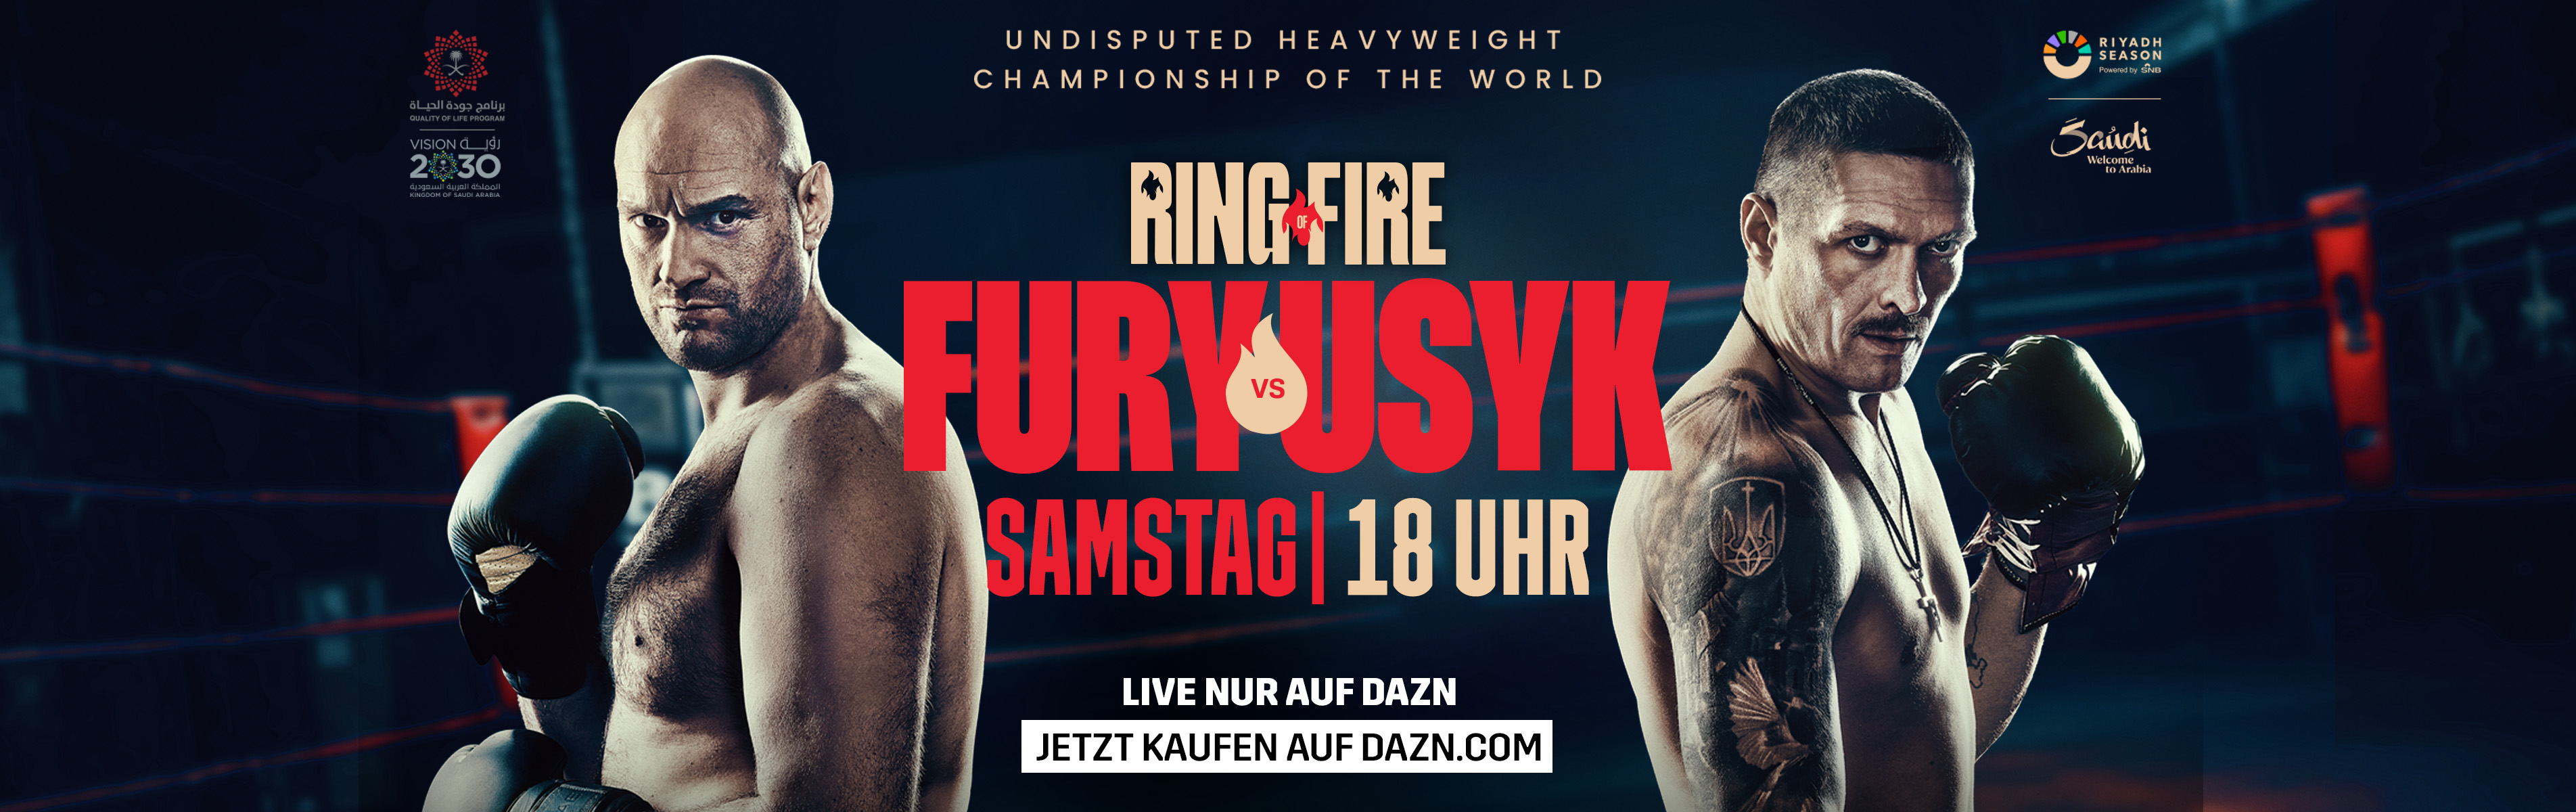 Erlebe am 18. Mai das größte Box-Ereignis des Jahrhunderts mit dem Titelkampf Fury vs Usyk und Agit Kabayel gegen Frank Sanchez